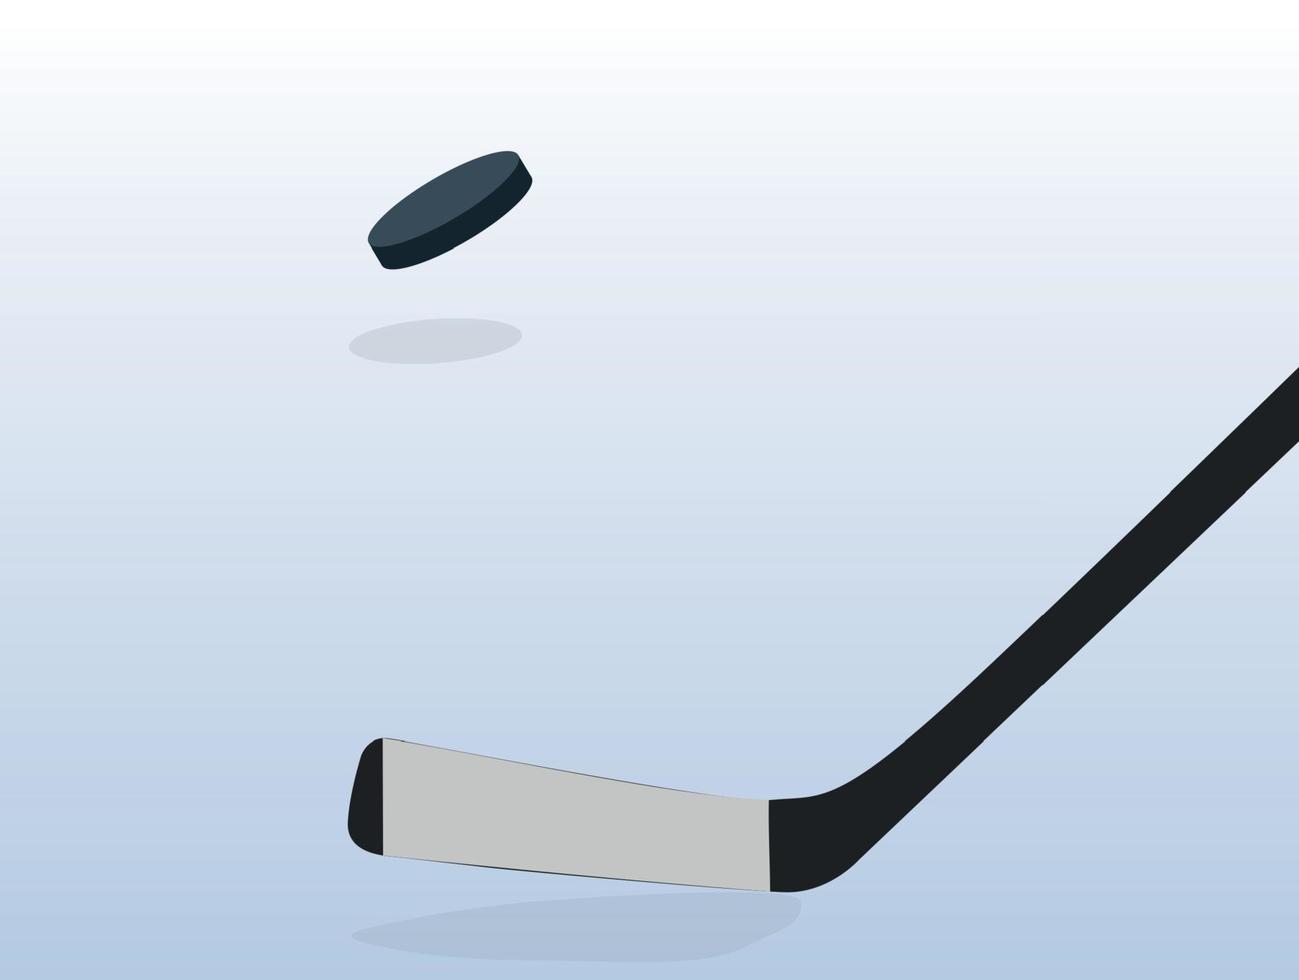 giocatore di hockey su ghiaccio con bastone e disco. illustrazione vettoriale. vettore